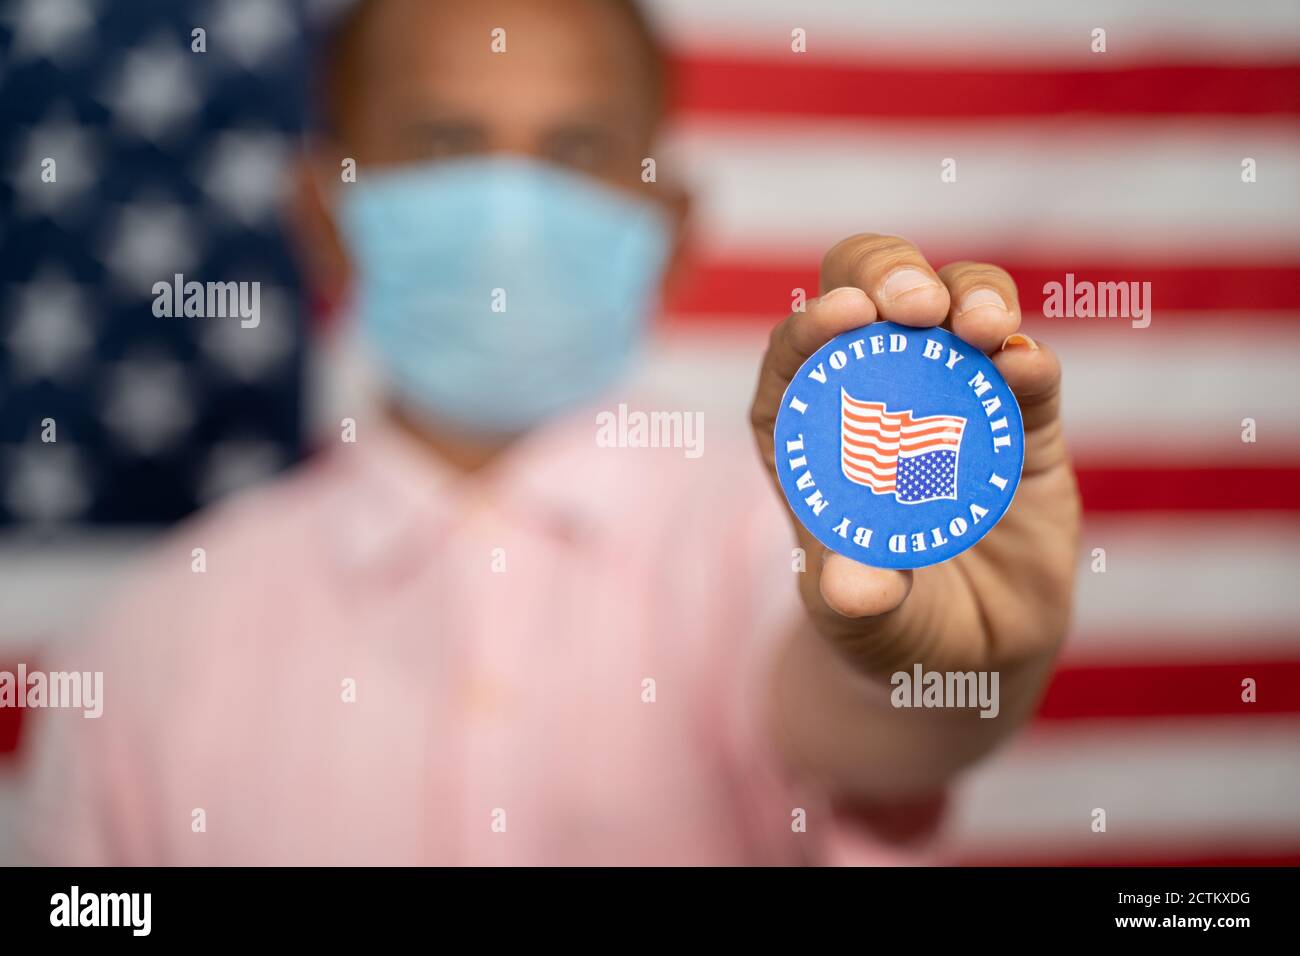 Mann in medizinischer Maske zeigt, dass ich per Mail-Aufkleber mit US-Flagge als Hintergrund gestimmt habe - Konzept der Post bei der Wahl in den USA. Stockfoto